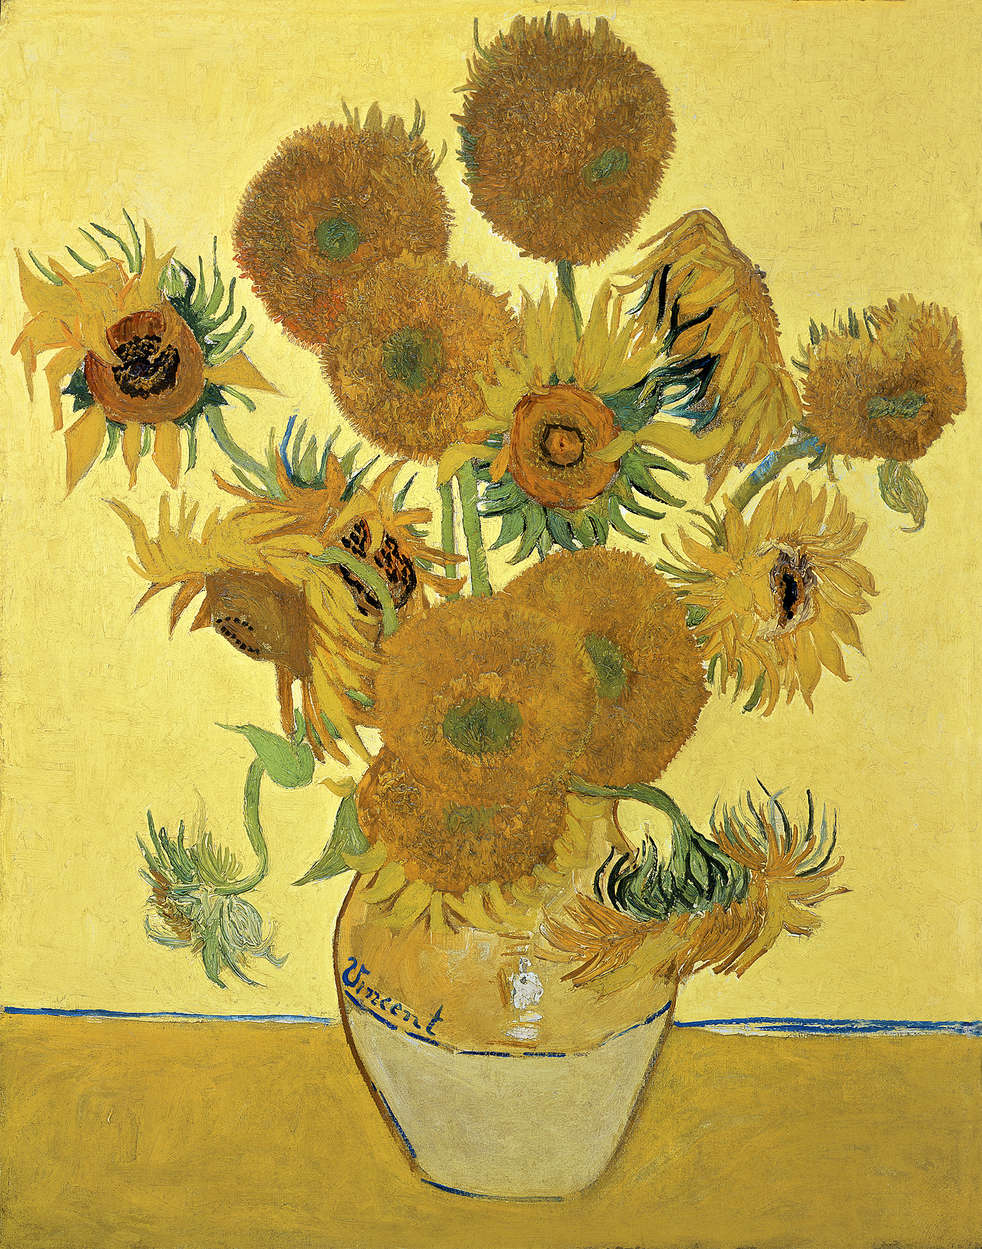             Papier peint panoramique "Tournesols" de Vincent van Gogh
        